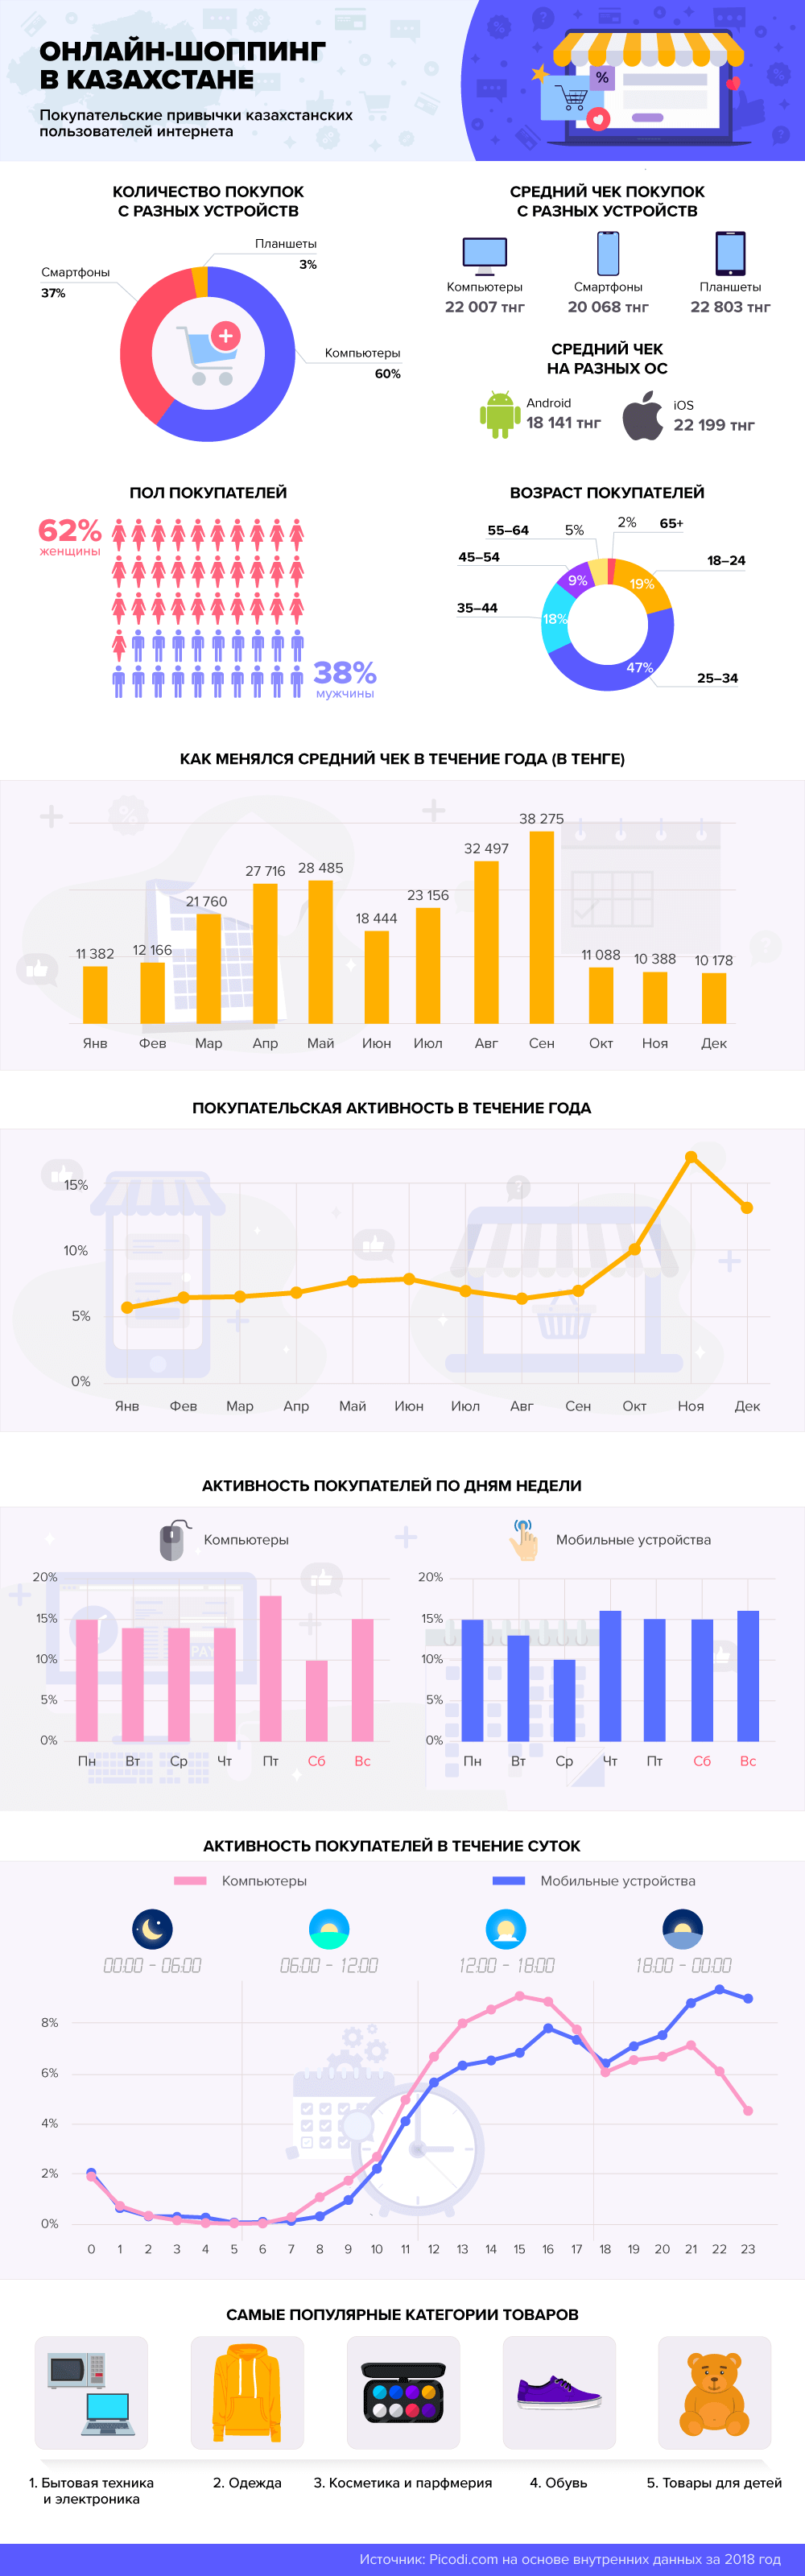 статистика и графика онлайн-шоппинга